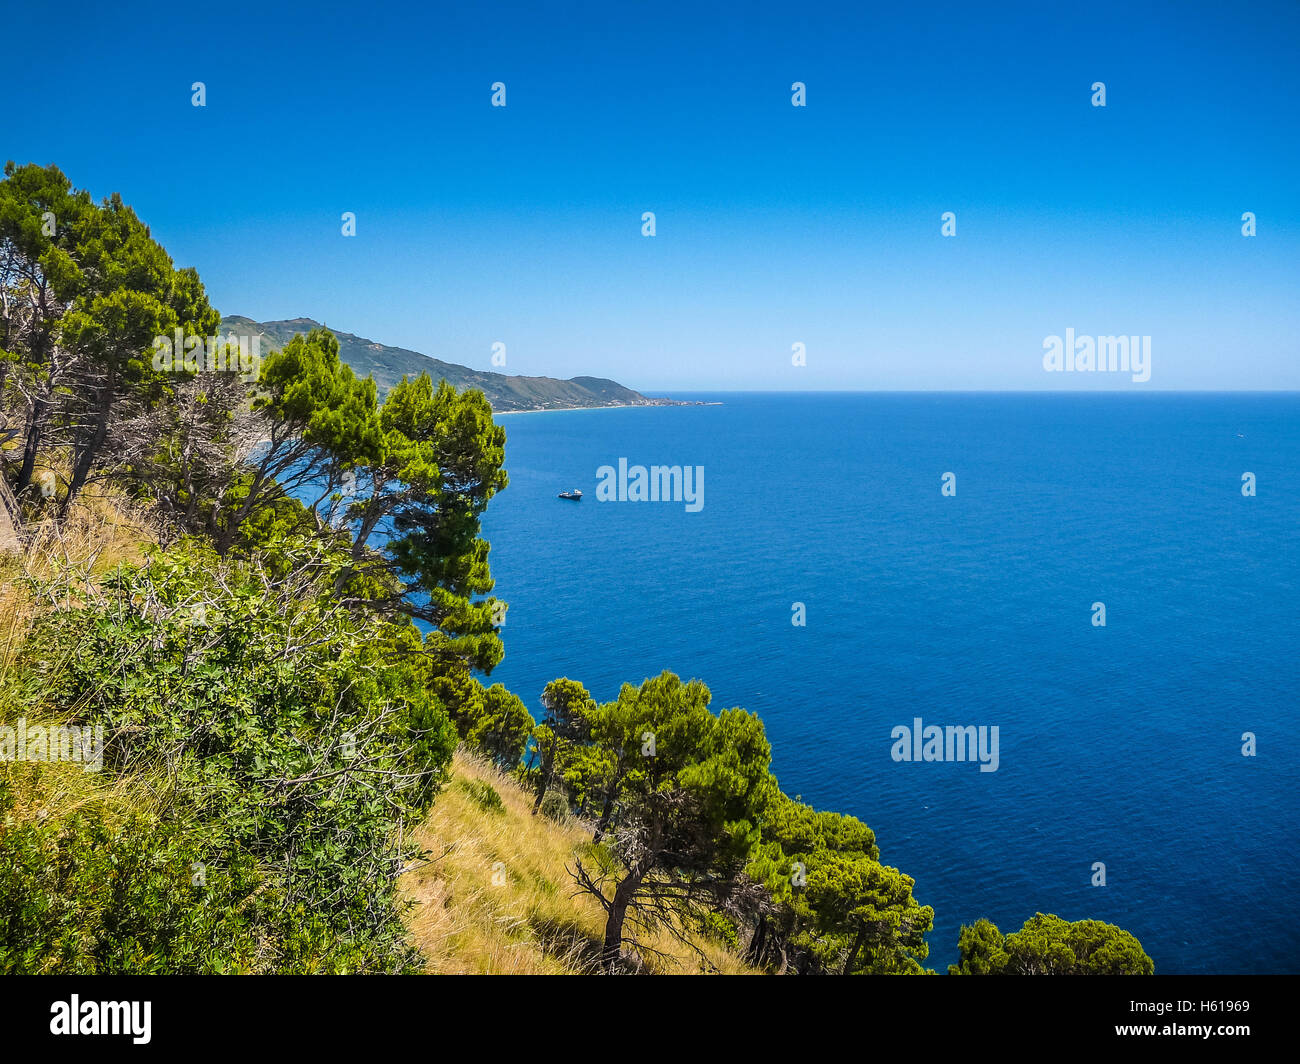 Vista panoramica del bellissimo paesaggio costiero presso la costa Cilentan, provincia di Salerno, Campania, Italia meridionale Foto Stock